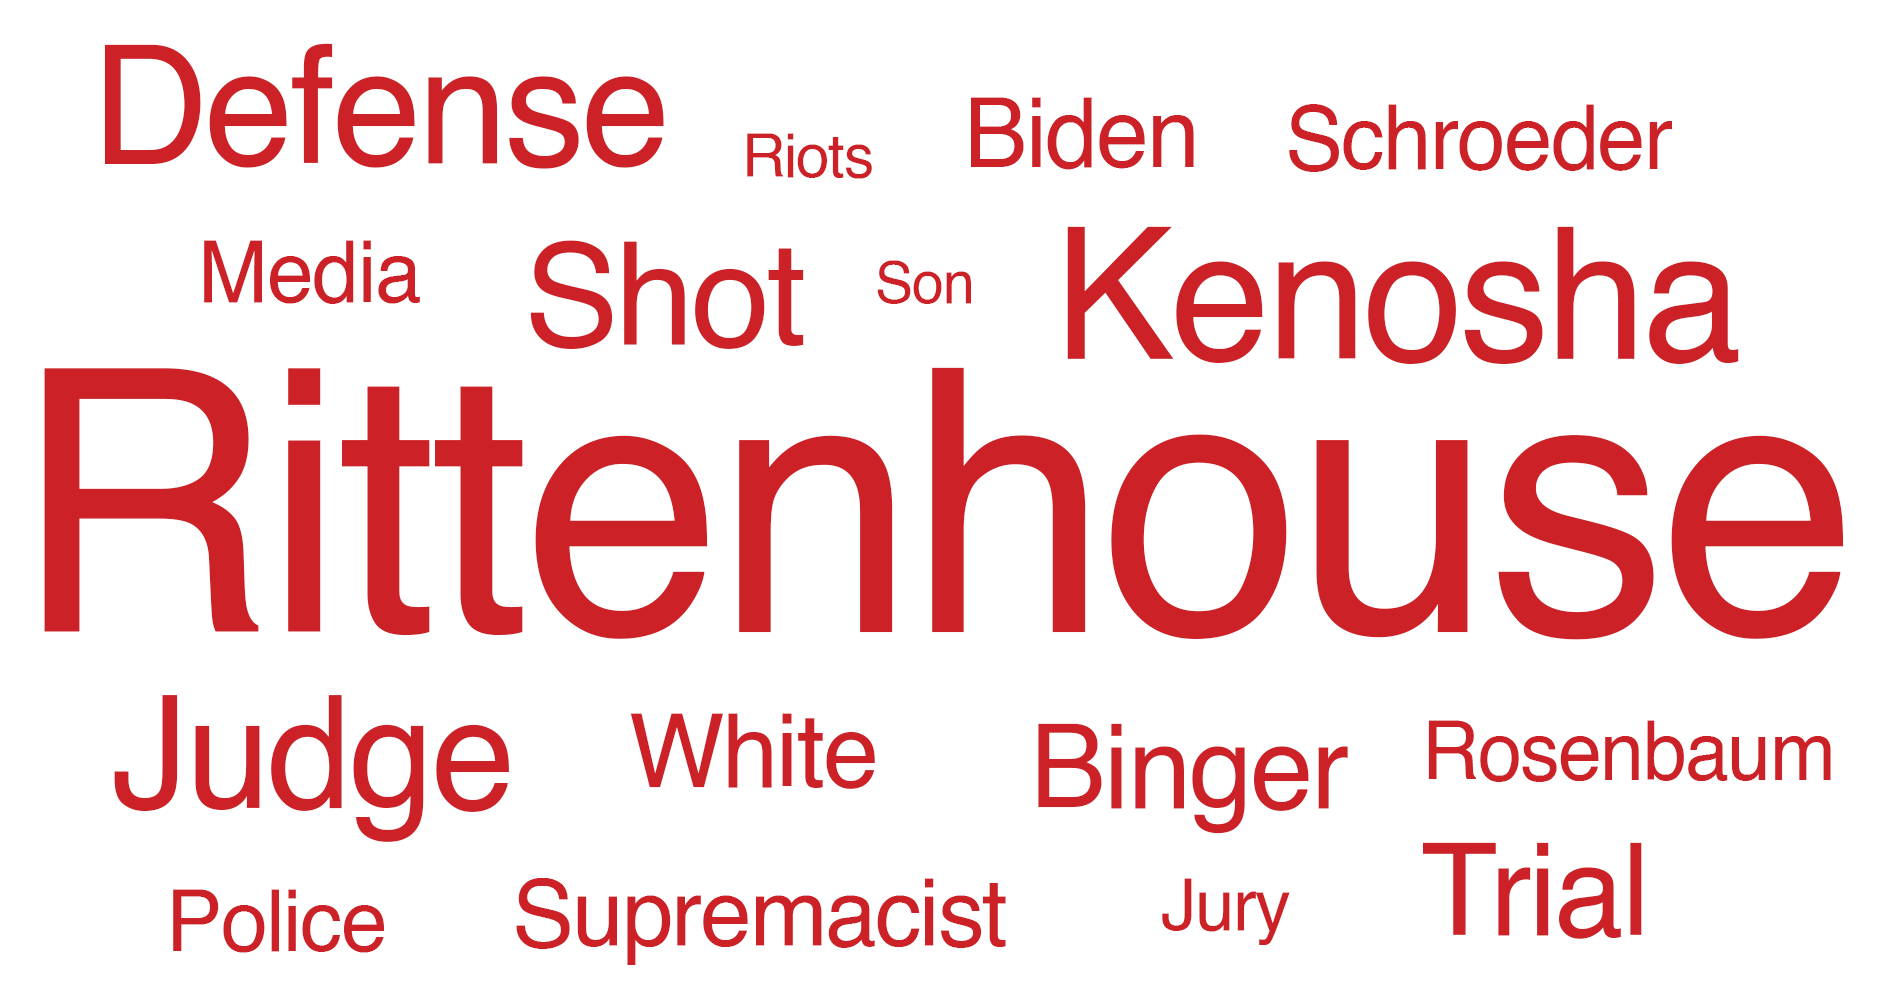 Rittenhouse, Kenosha, Defense, Judge, Shot, Binger, Trial, White, Supremacist, Biden, Schroeder, Police, Rosenbaum, Jury, Media, Riots, Son